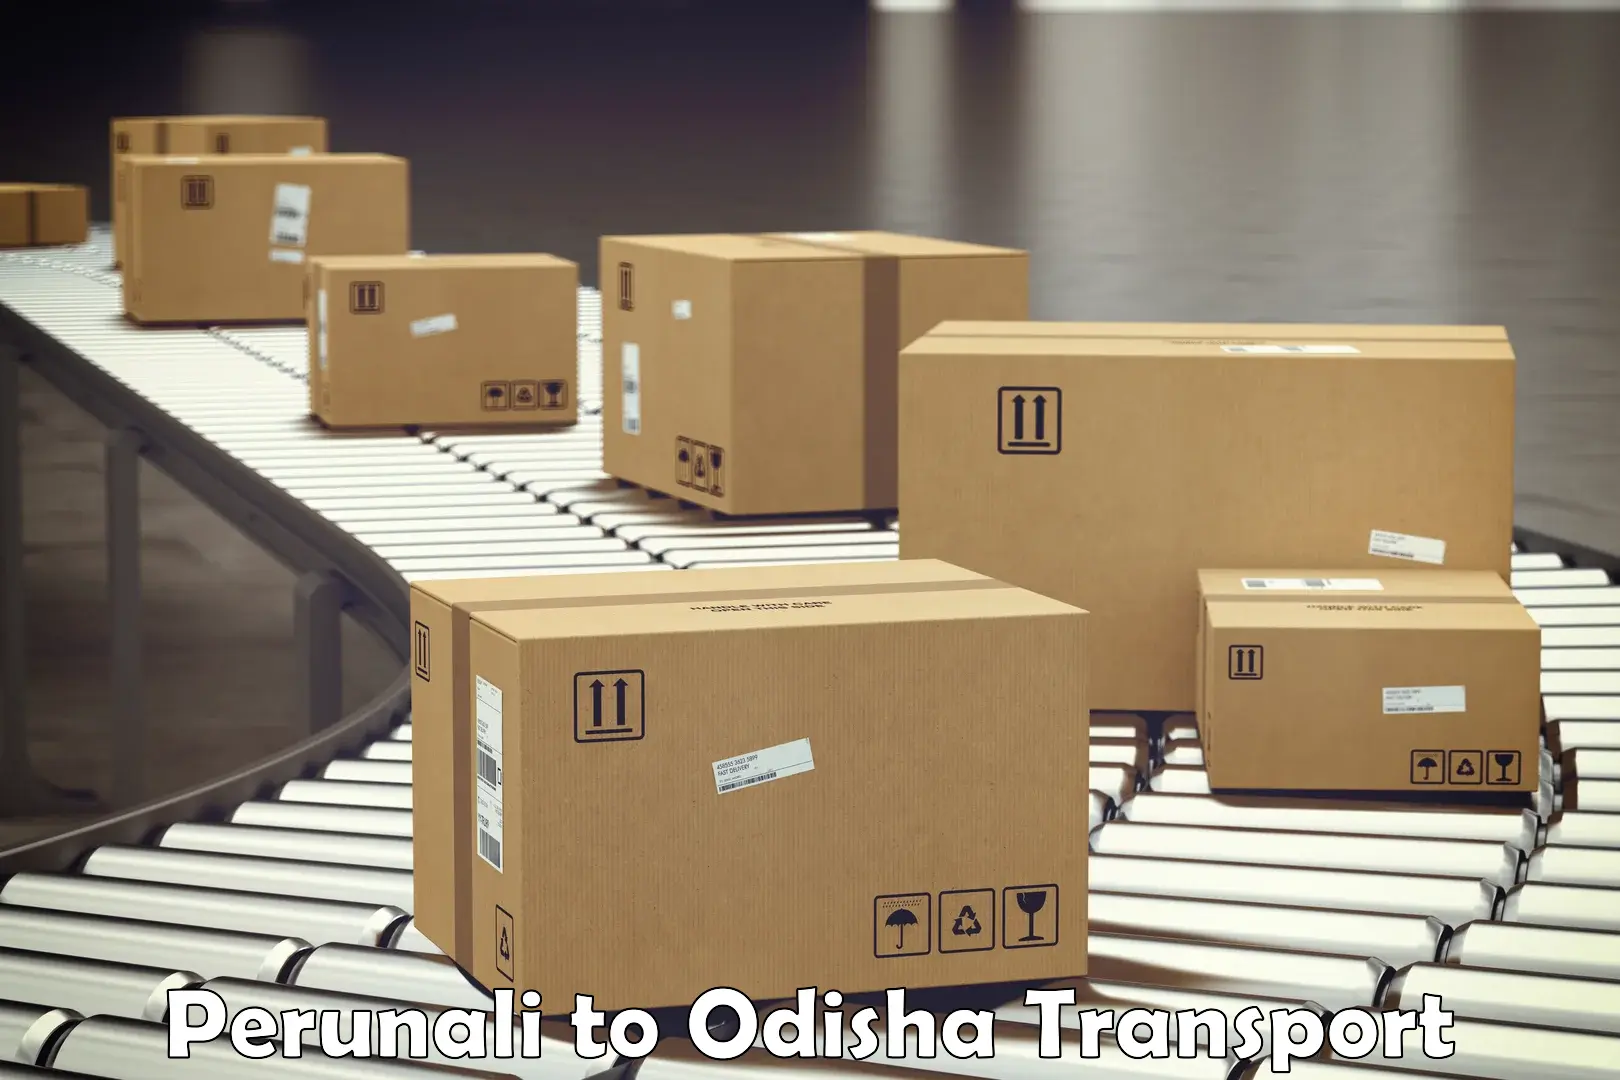 Furniture transport service Perunali to Odisha